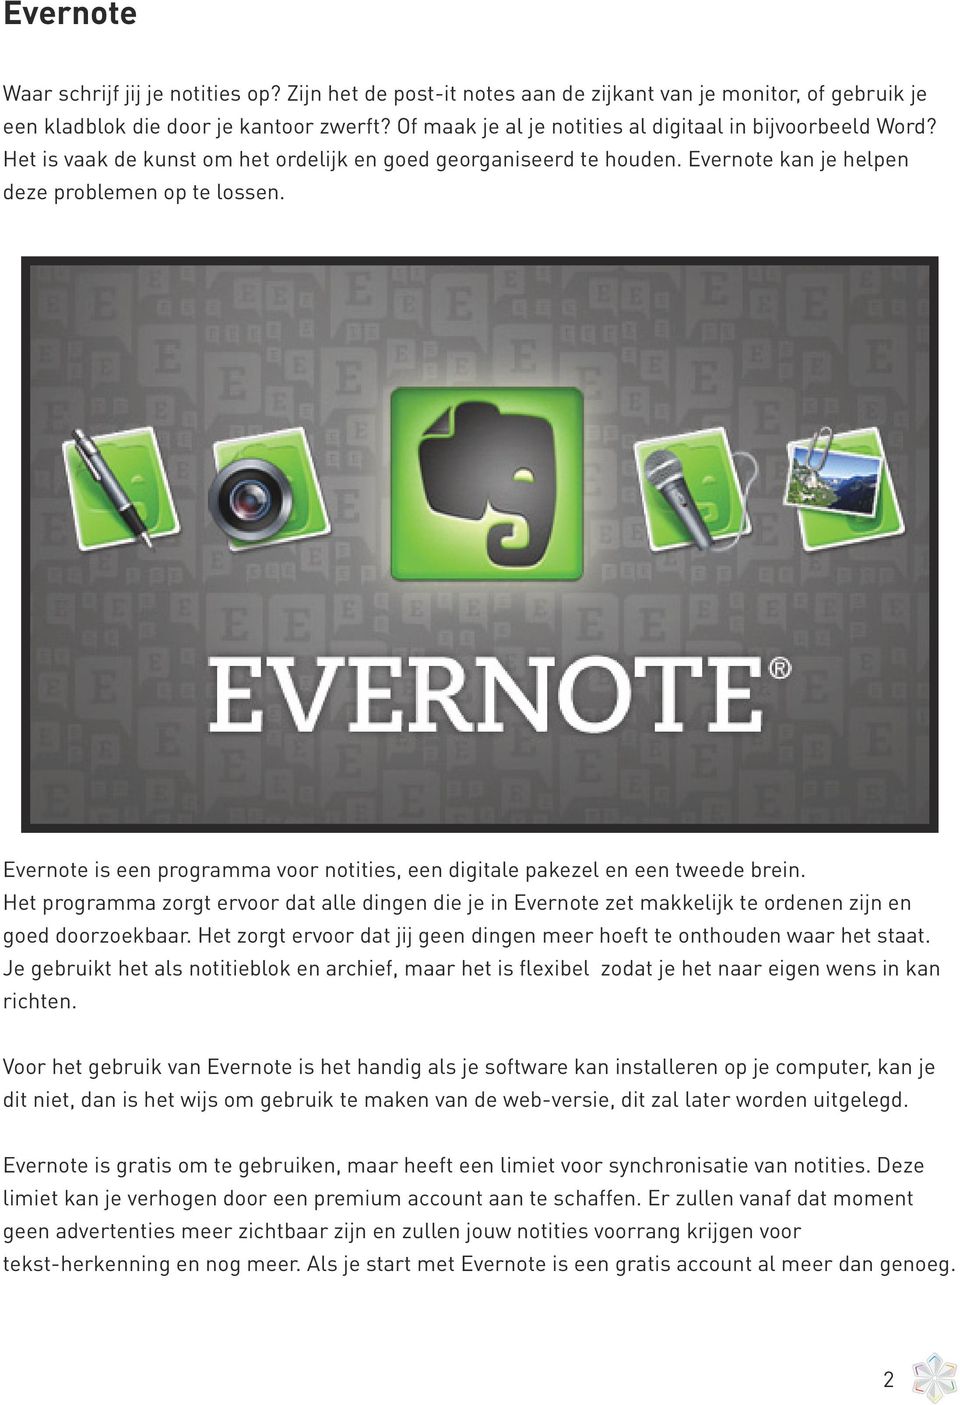 Evernote is een programma voor notities, een digitale pakezel en een tweede brein. Het programma zorgt ervoor dat alle dingen die je in Evernote zet makkelijk te ordenen zijn en goed doorzoekbaar.